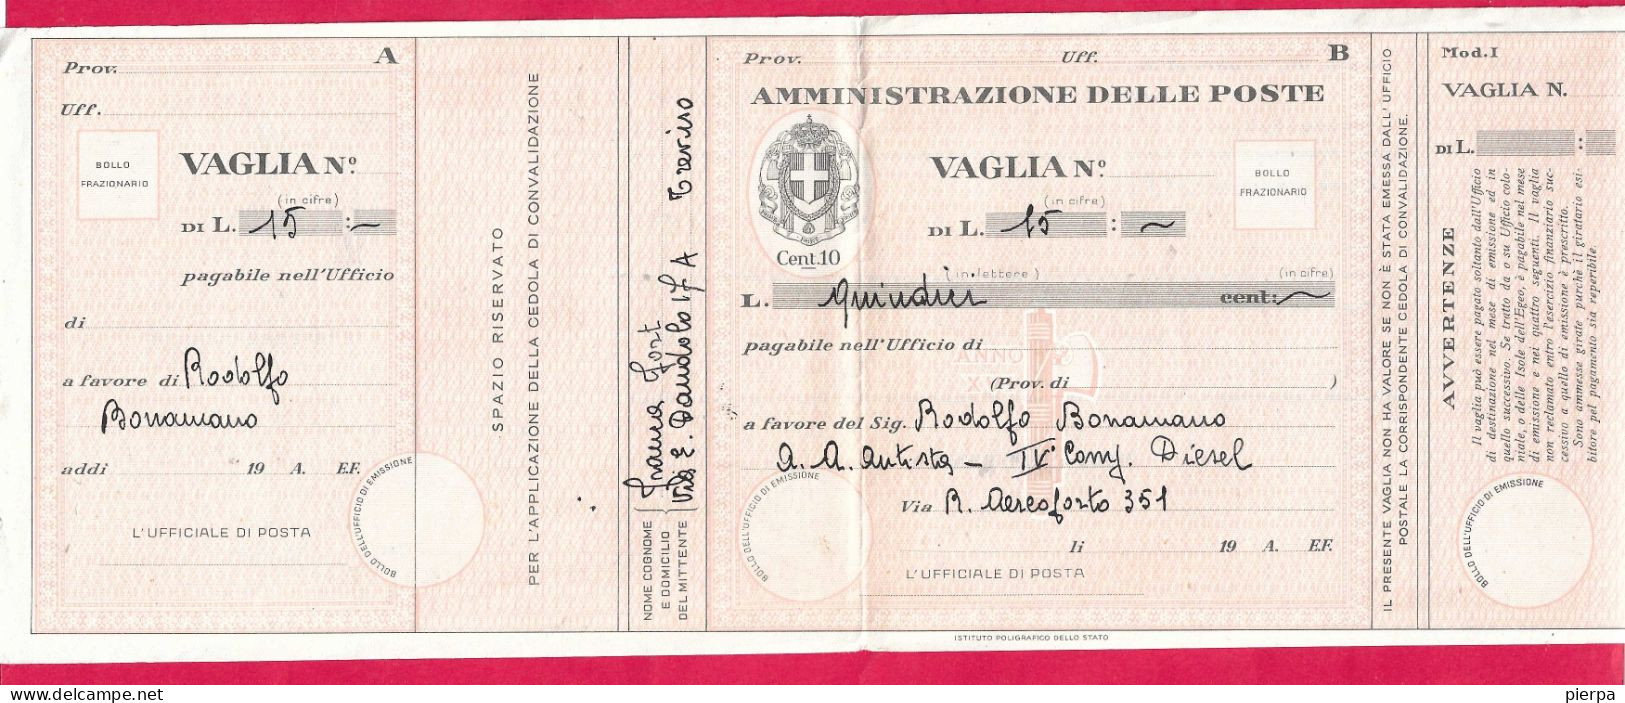 MODULO VAGLIA POSTALE C.10 (CAT. INT. 45/B) PRECOMPILATO  - NON VIAGGIATO - Vaglia Postale